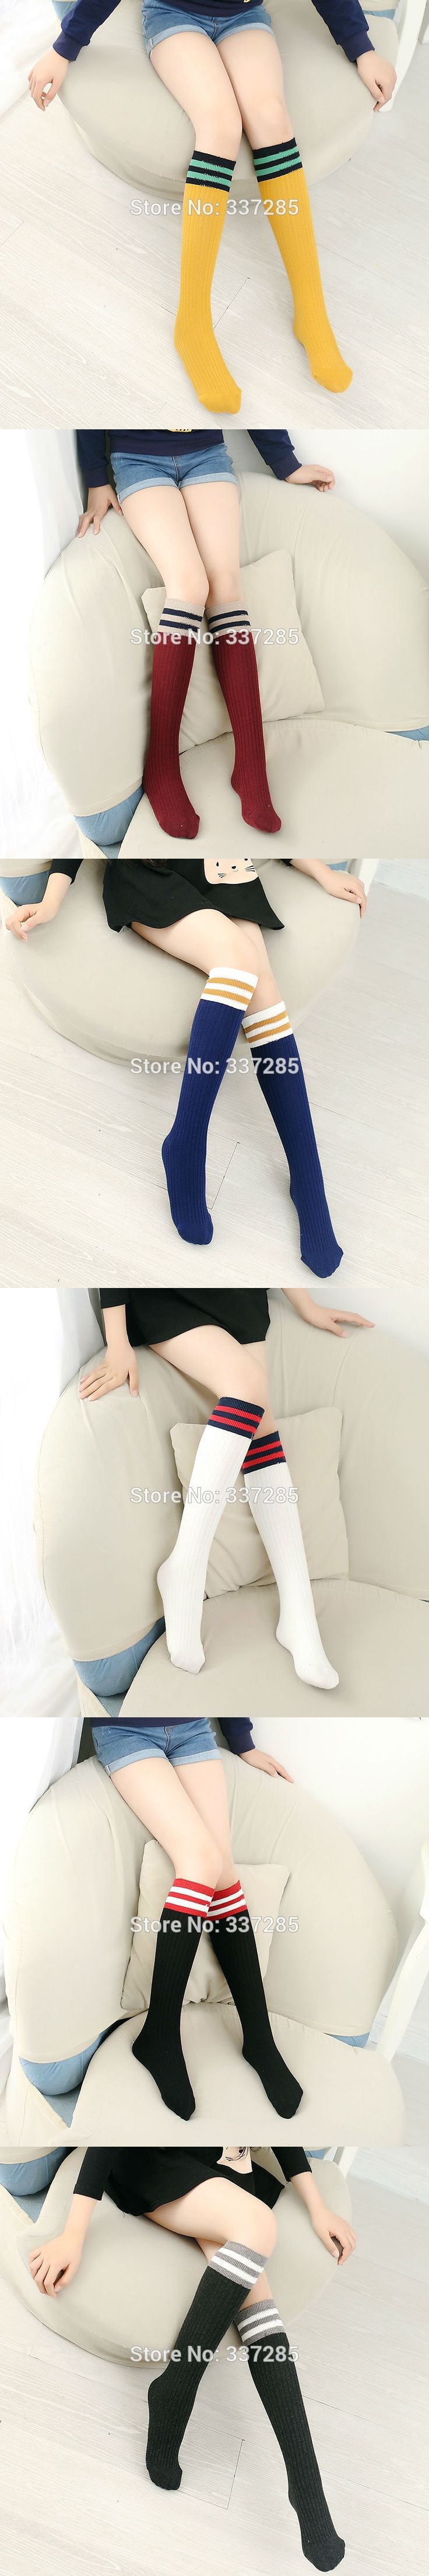 New Warmers Girls Knee High Socks For Baby Children Boys Cotton Lovely Stripe Over Knee Socks